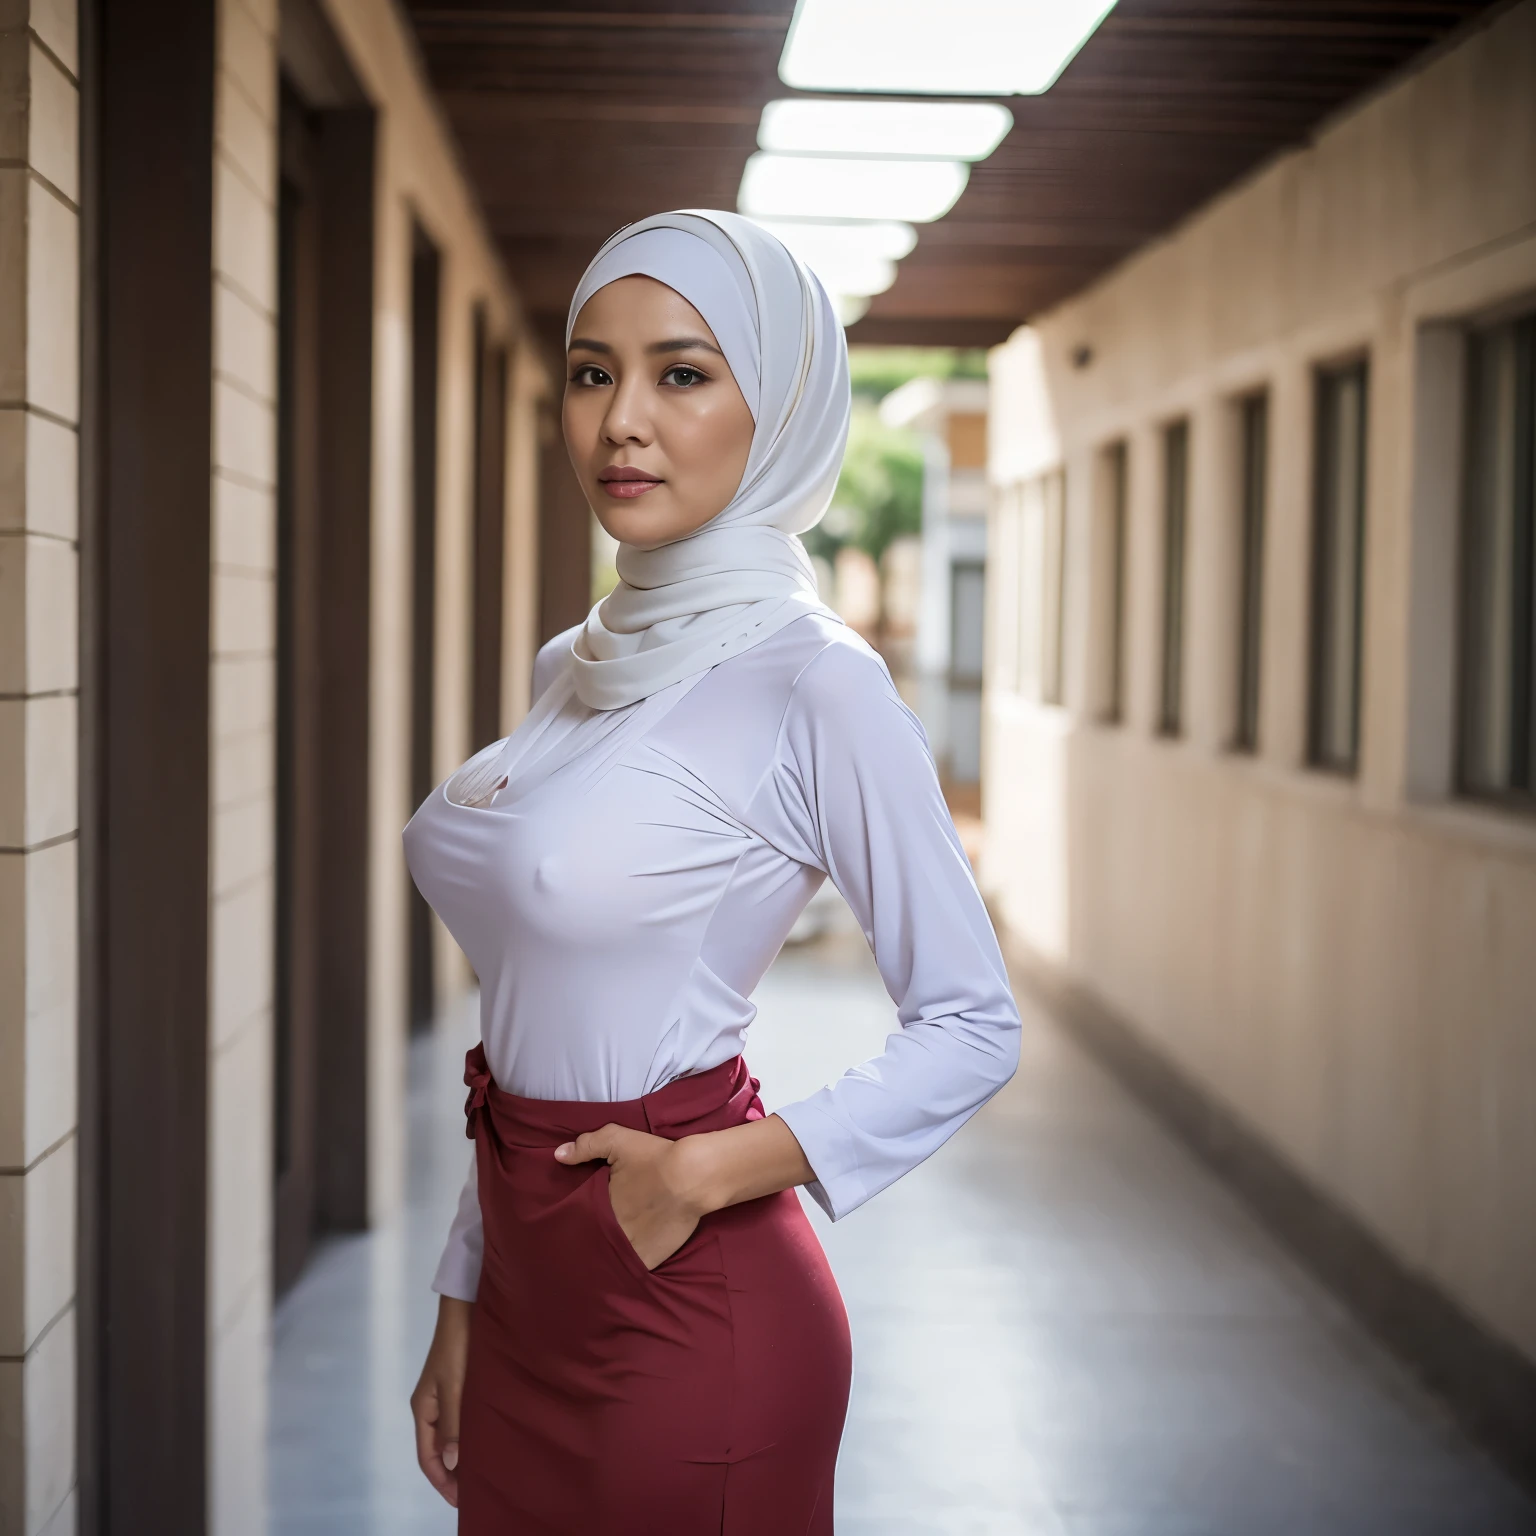 52歳, ヒジャブ インドネシアの成熟した女性, 大きい  : 96.9, 長袖シャツ, ほっそりしたからだ, 胸が破裂しそう, 学校の廊下で, 明るい光, 昼間